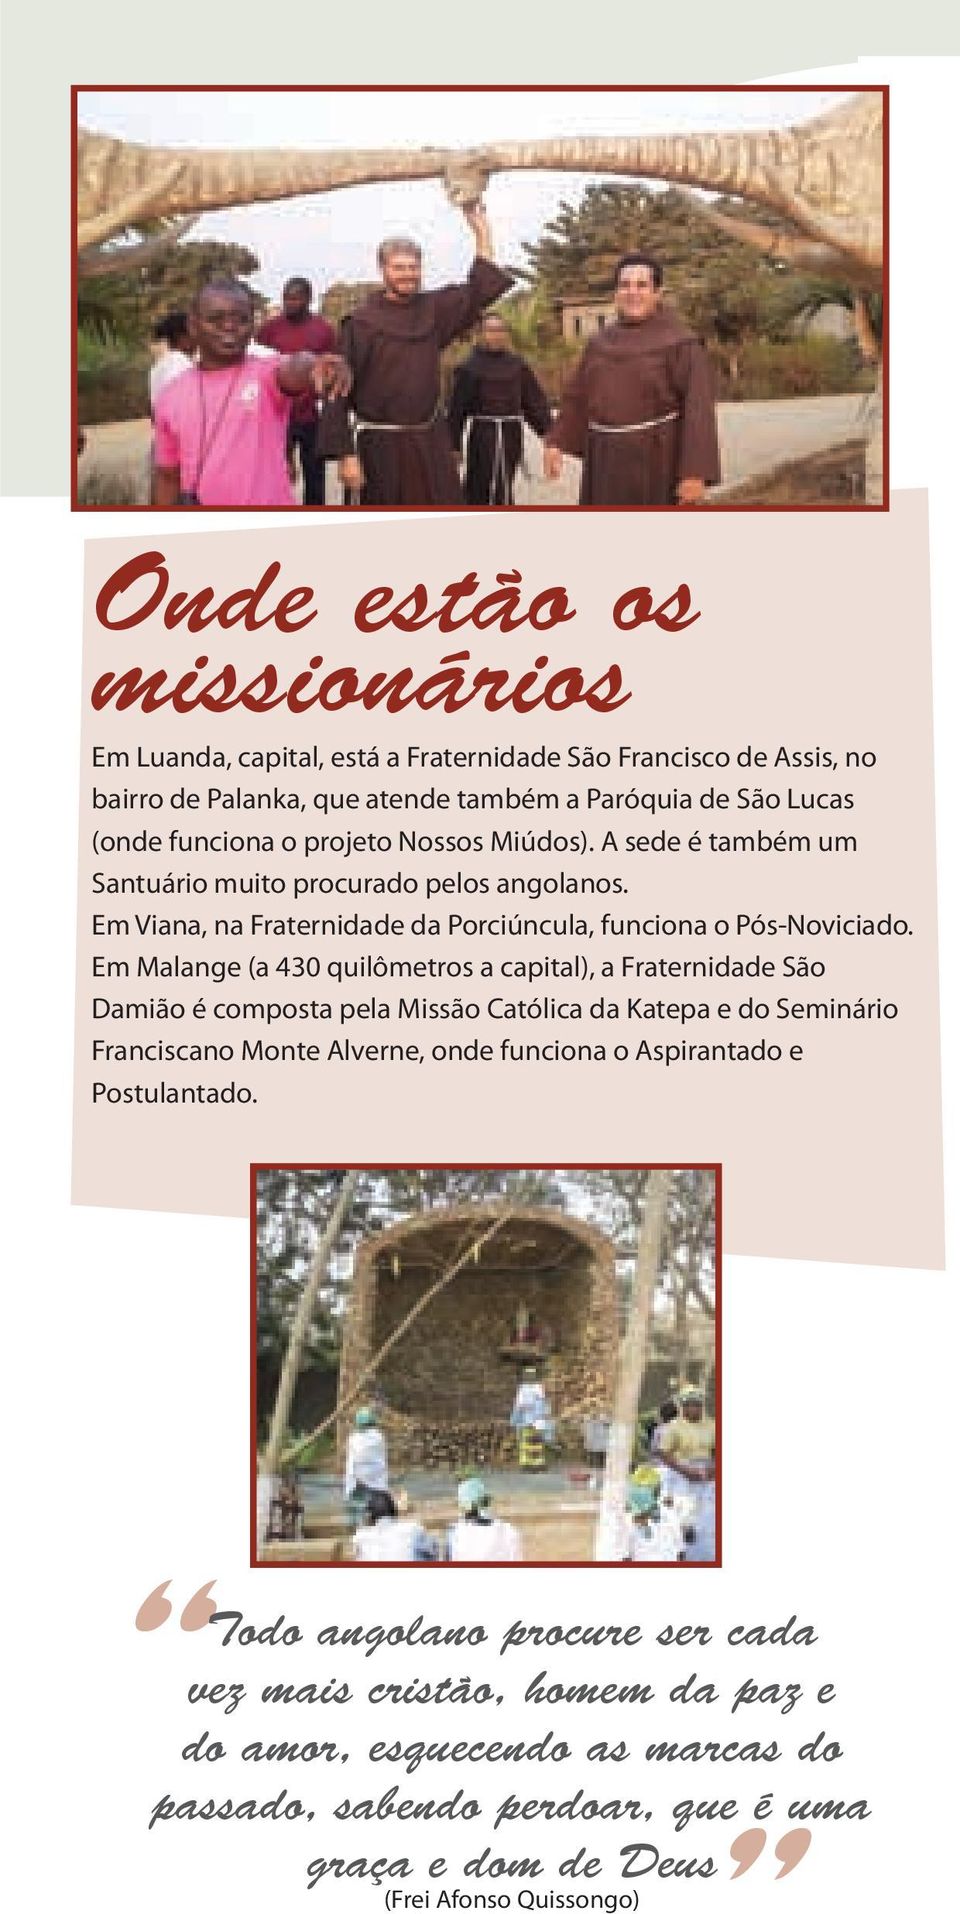 Em Malange (a 430 quilômetros a capital), a Fraternidade São Damião é composta pela Missão Católica da Katepa e do Seminário Franciscano Monte Alverne, onde funciona o